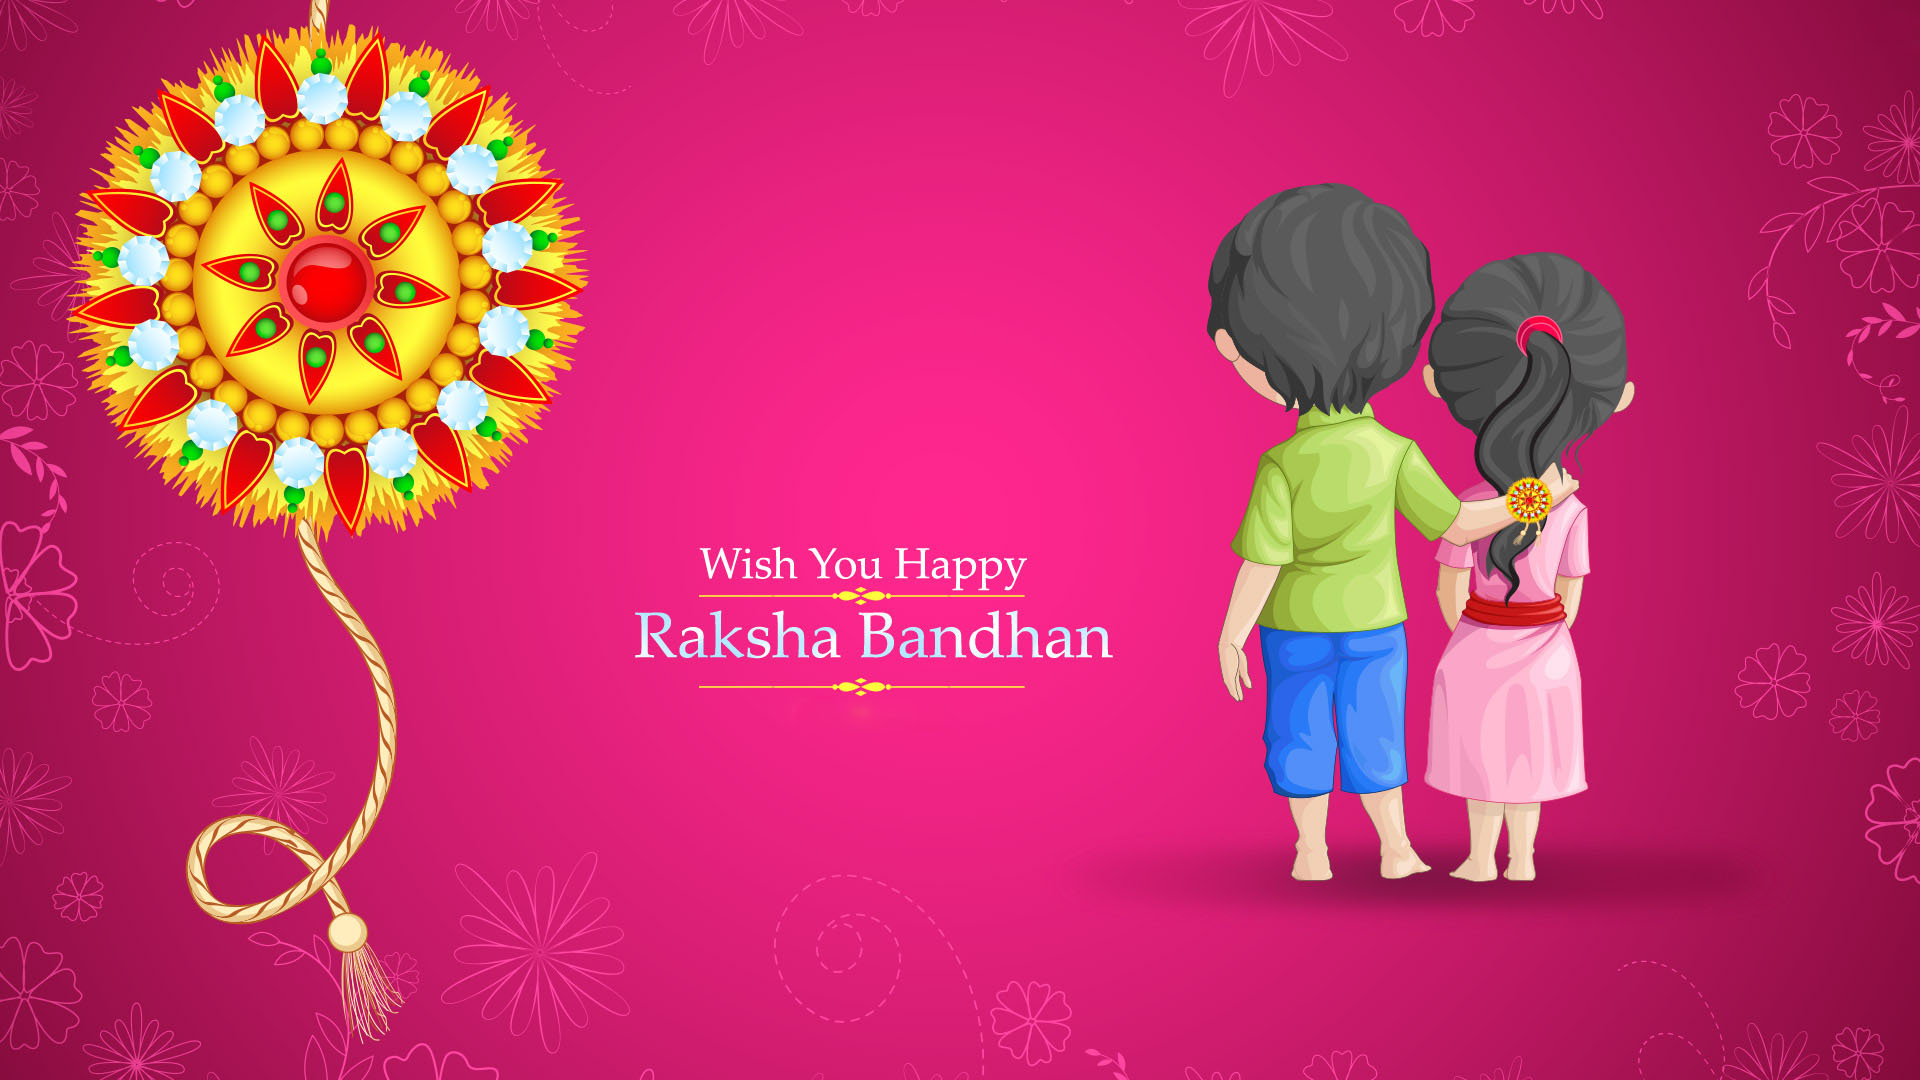 Happy Raksha Bandhan Rakhi HD Images & Wallpapers - Free Download 